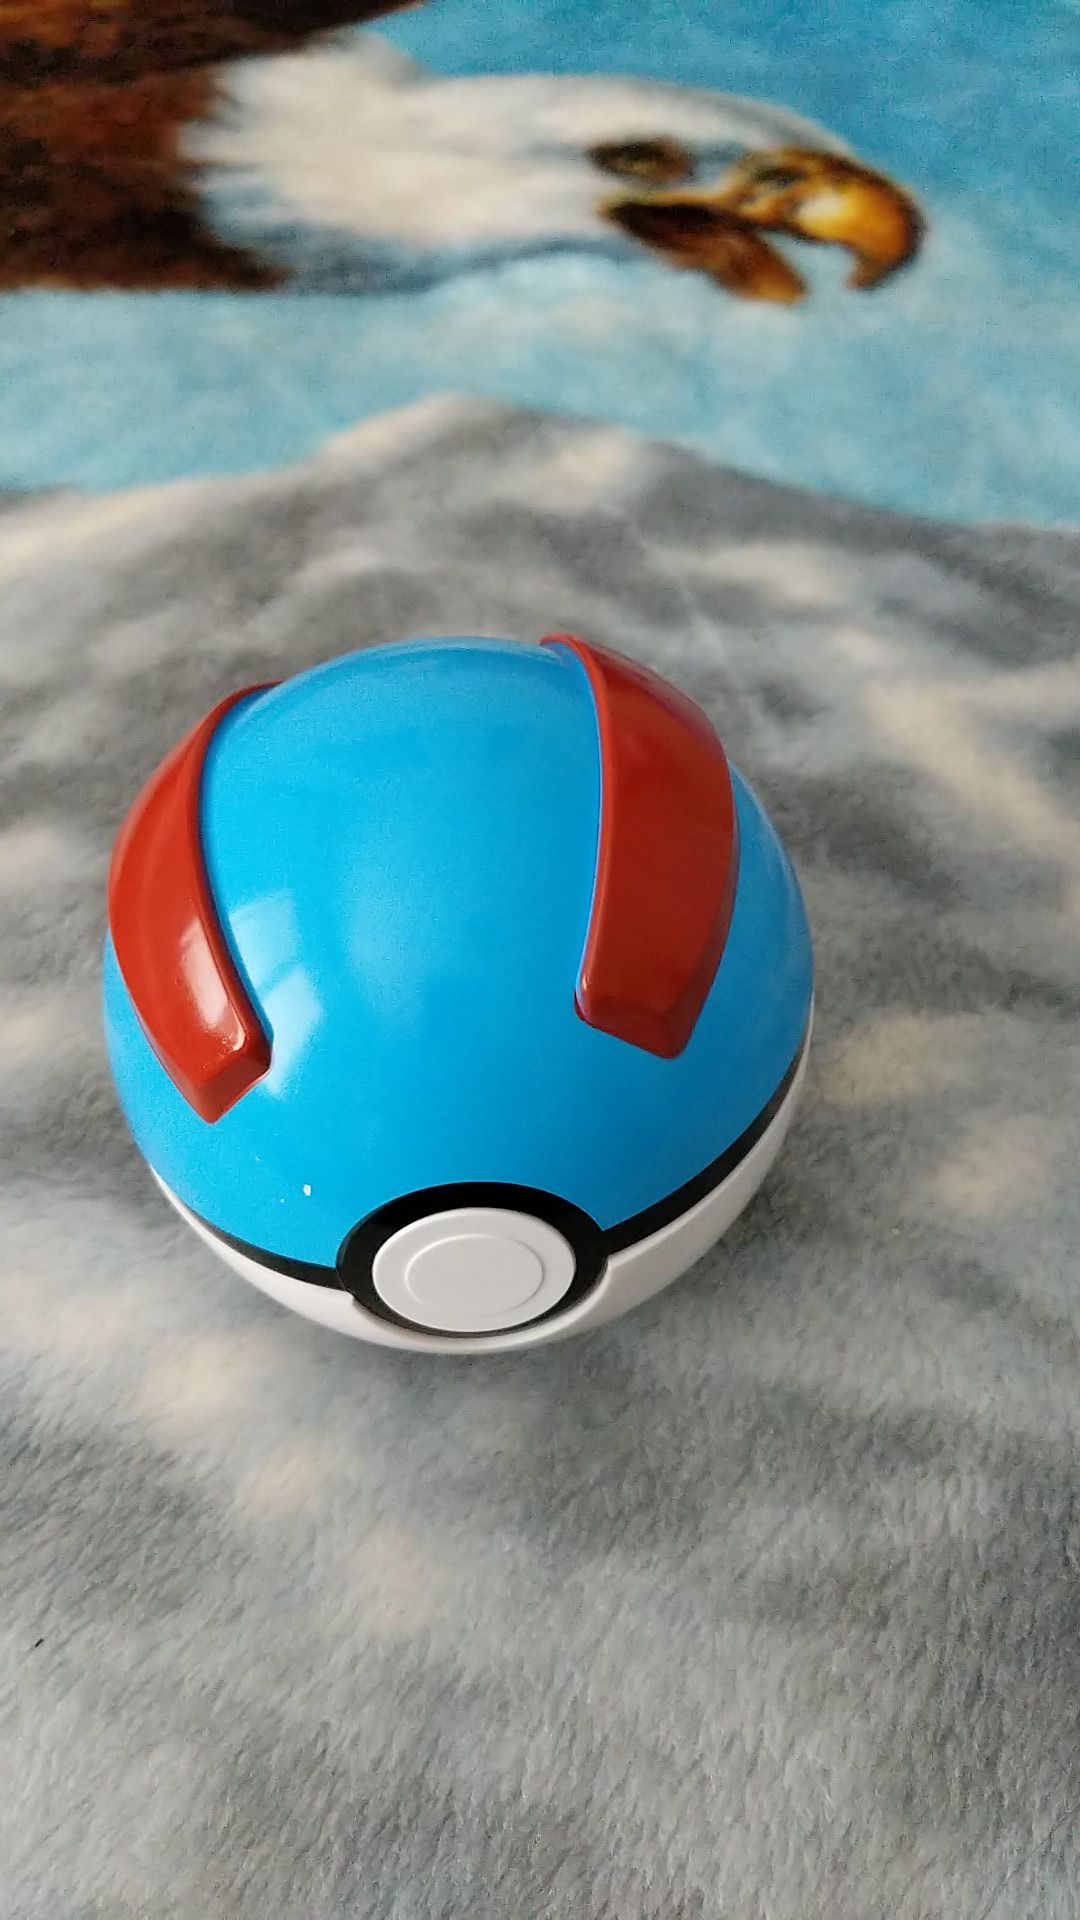 Pokemon ball inside little pokemon